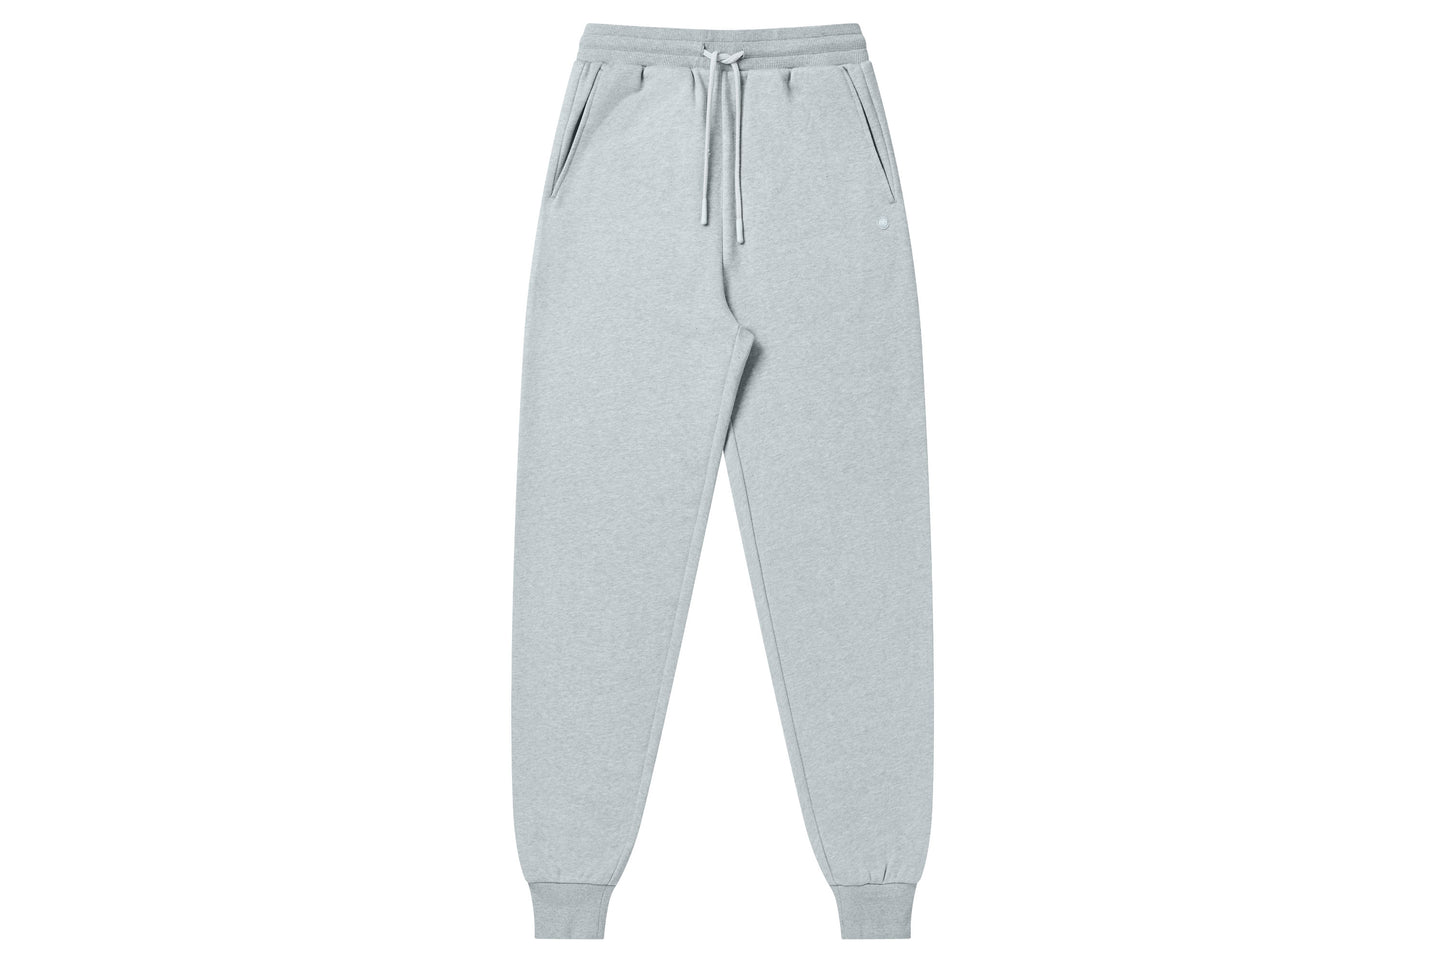 Blair Womens Grey Drawstring Sweatpants Size Small - beyond exchange